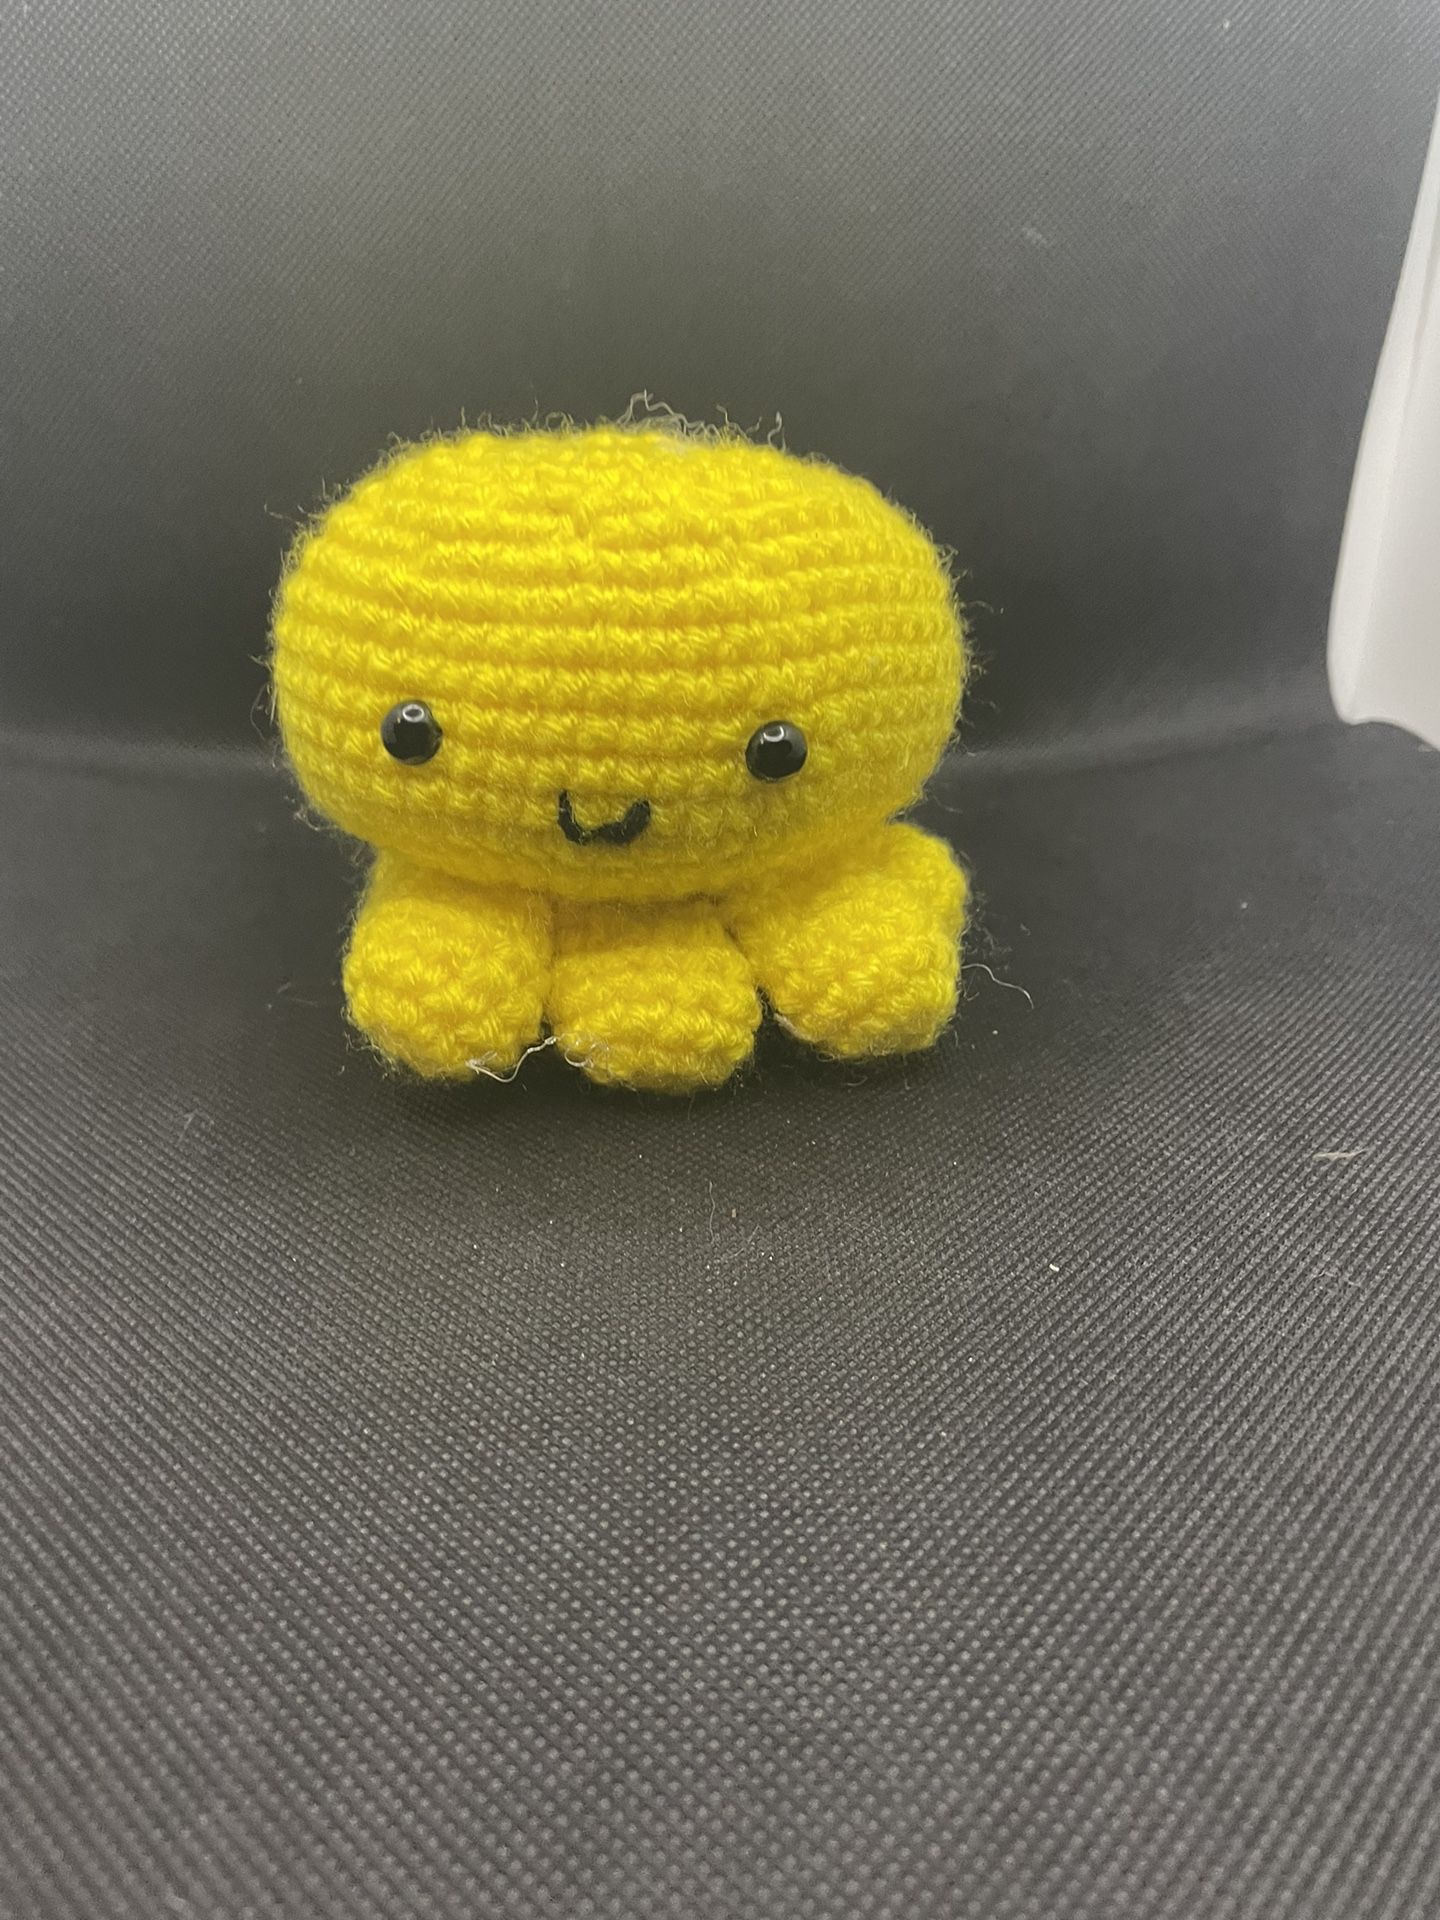 Crochet Small Octopus